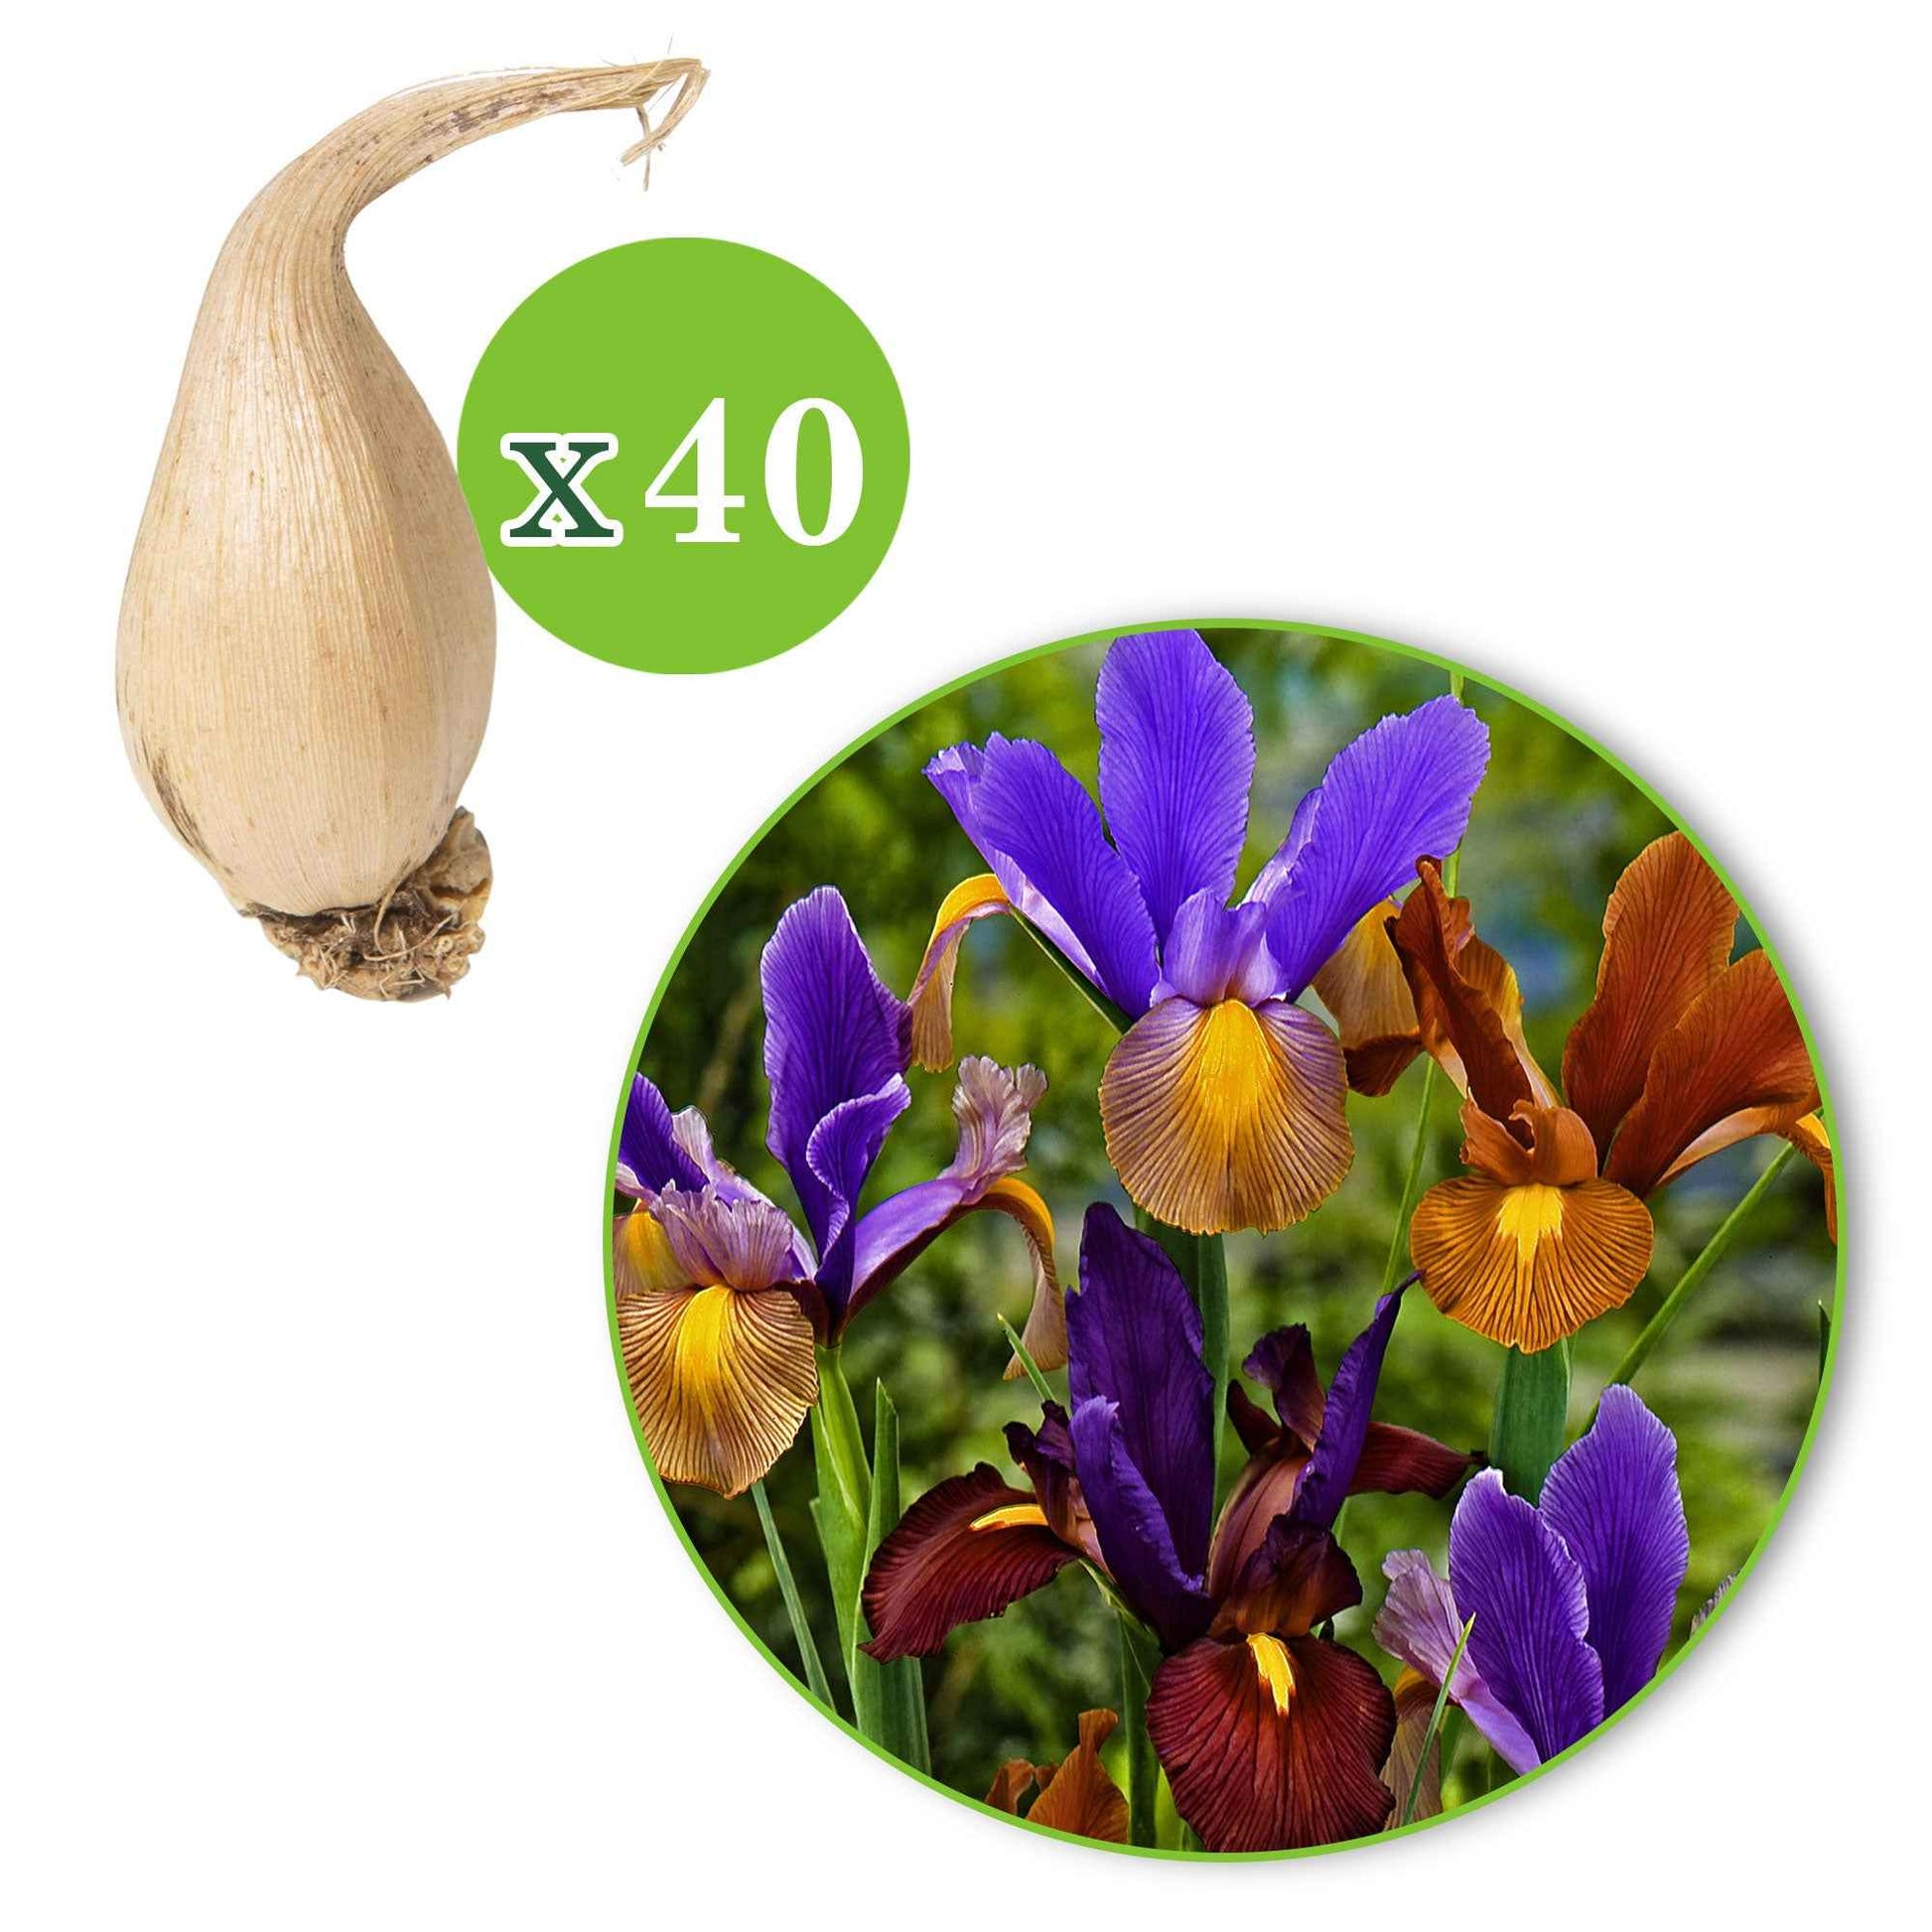 Holländische Iris Mischung (x40) - Iris hollandica 'tiger' - Iris